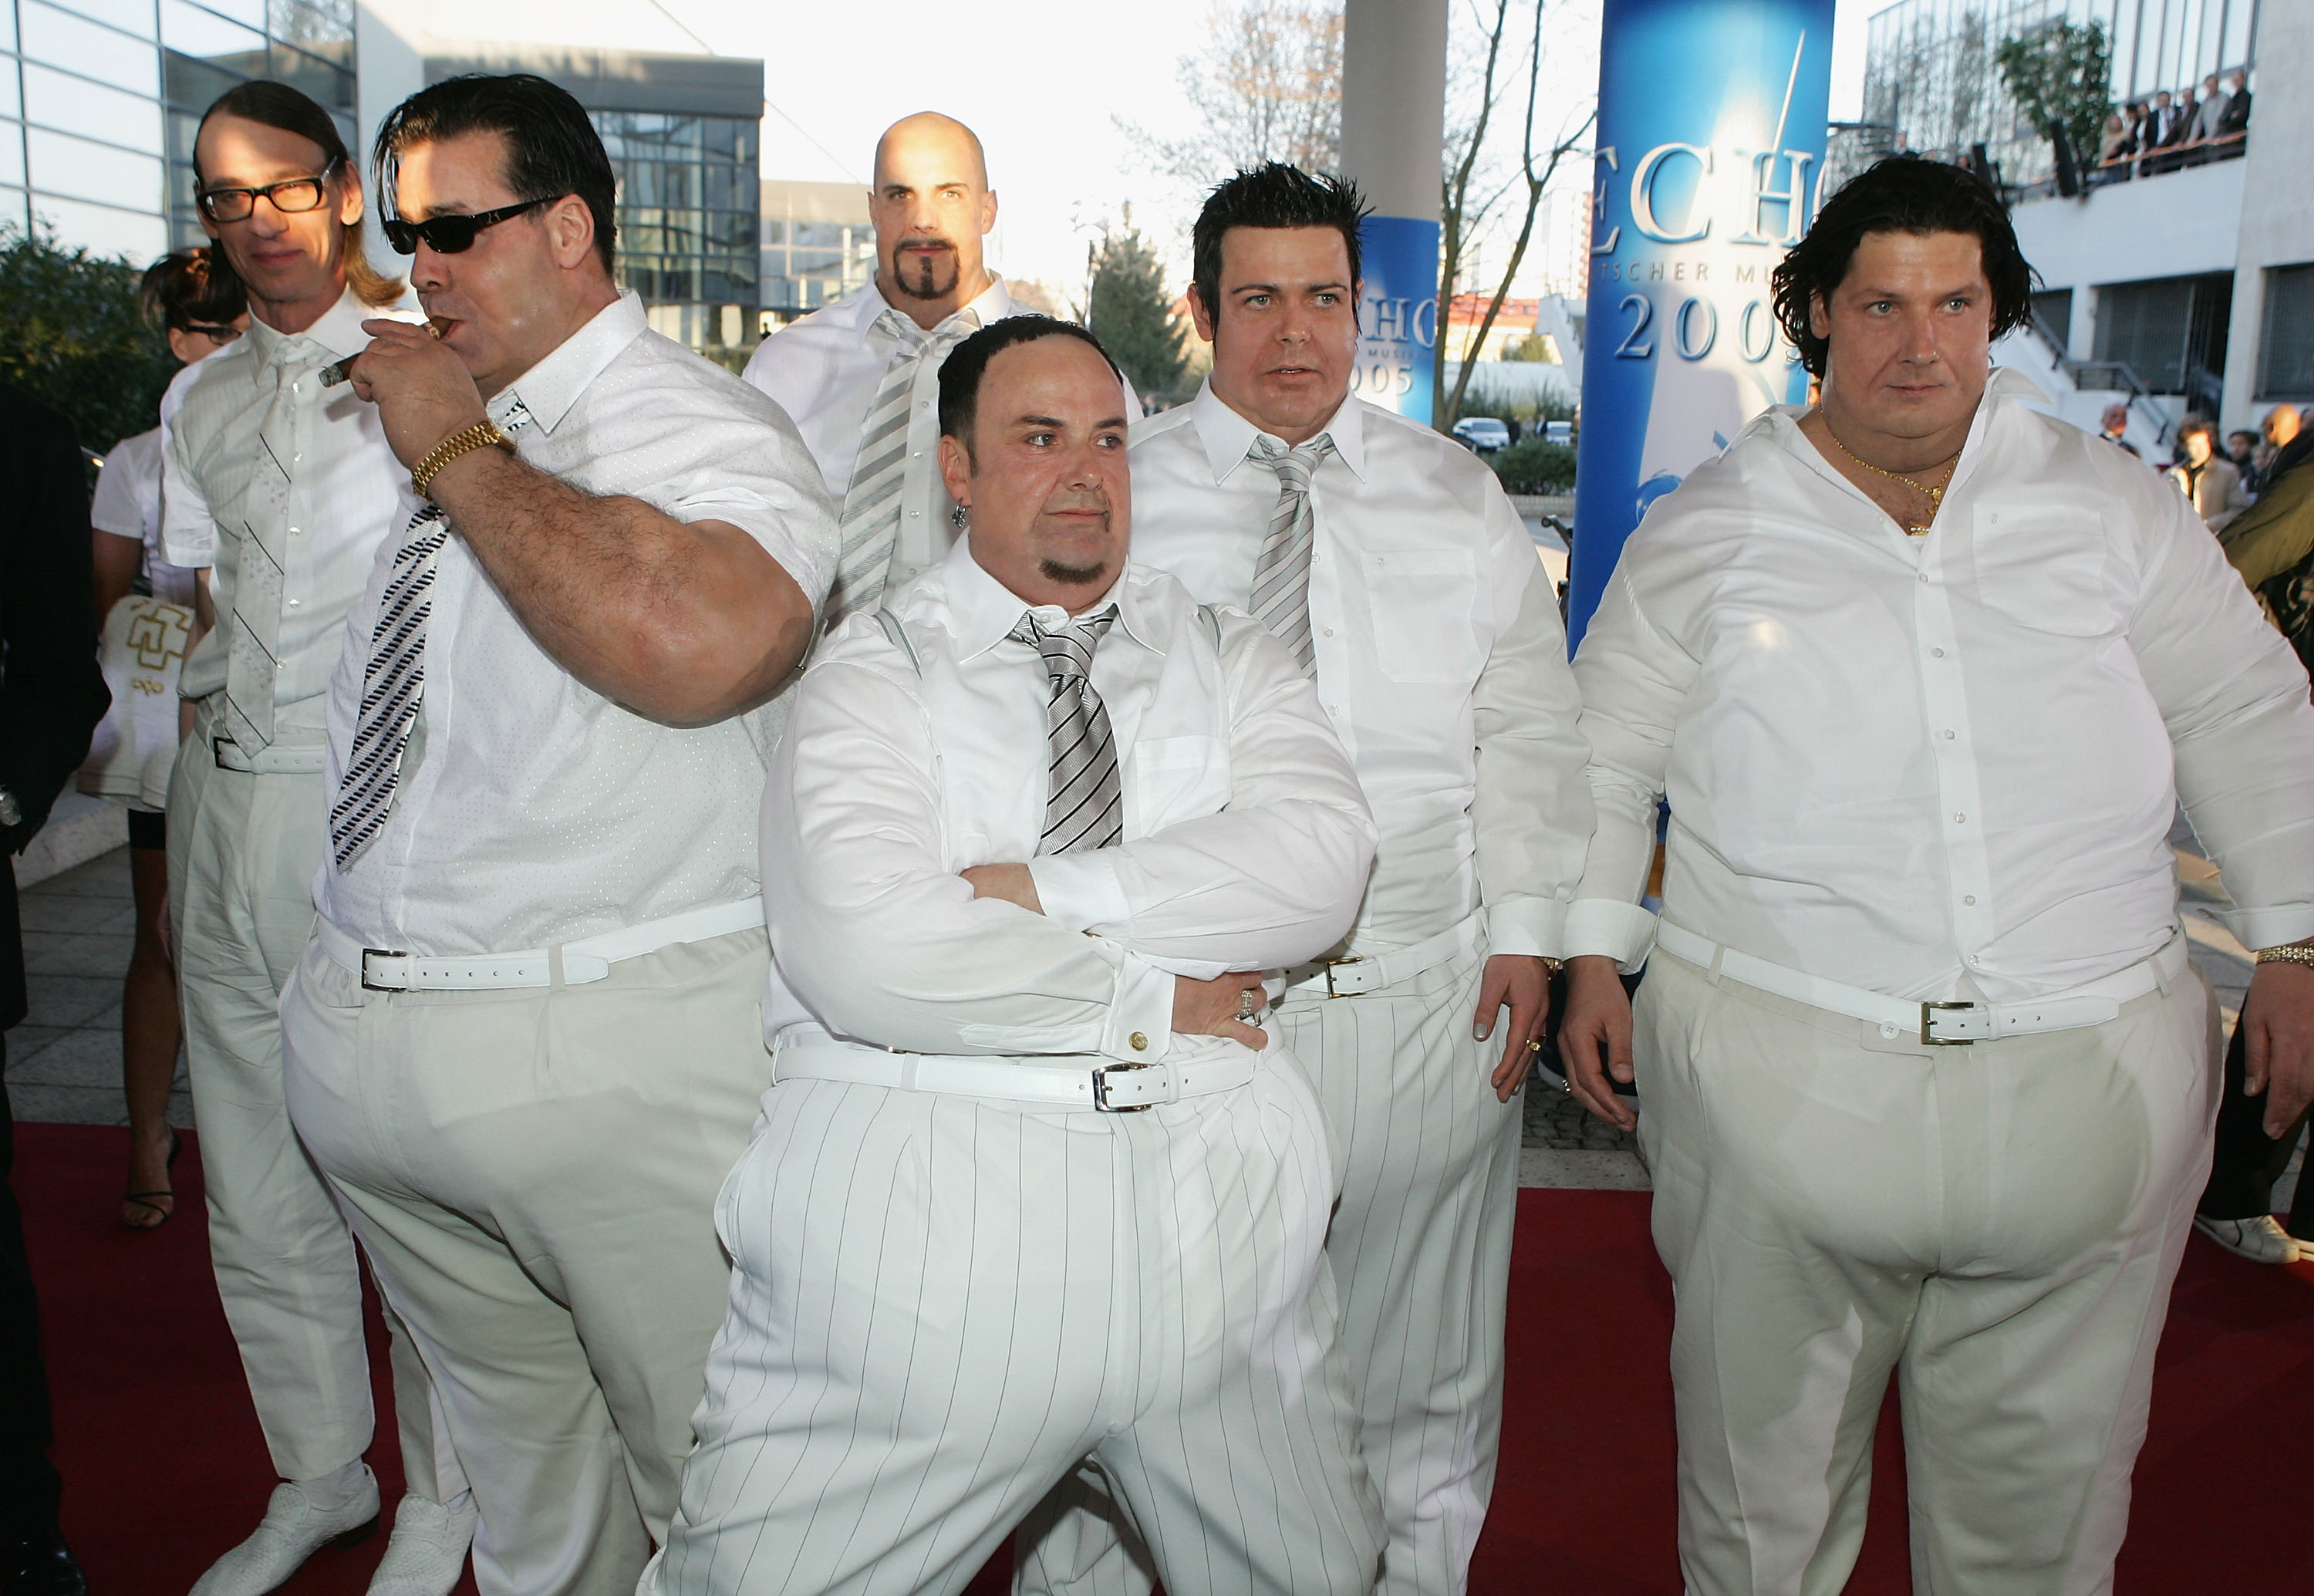 Rammstein taucht in fat-suits beim "ECHO" 2005 auf